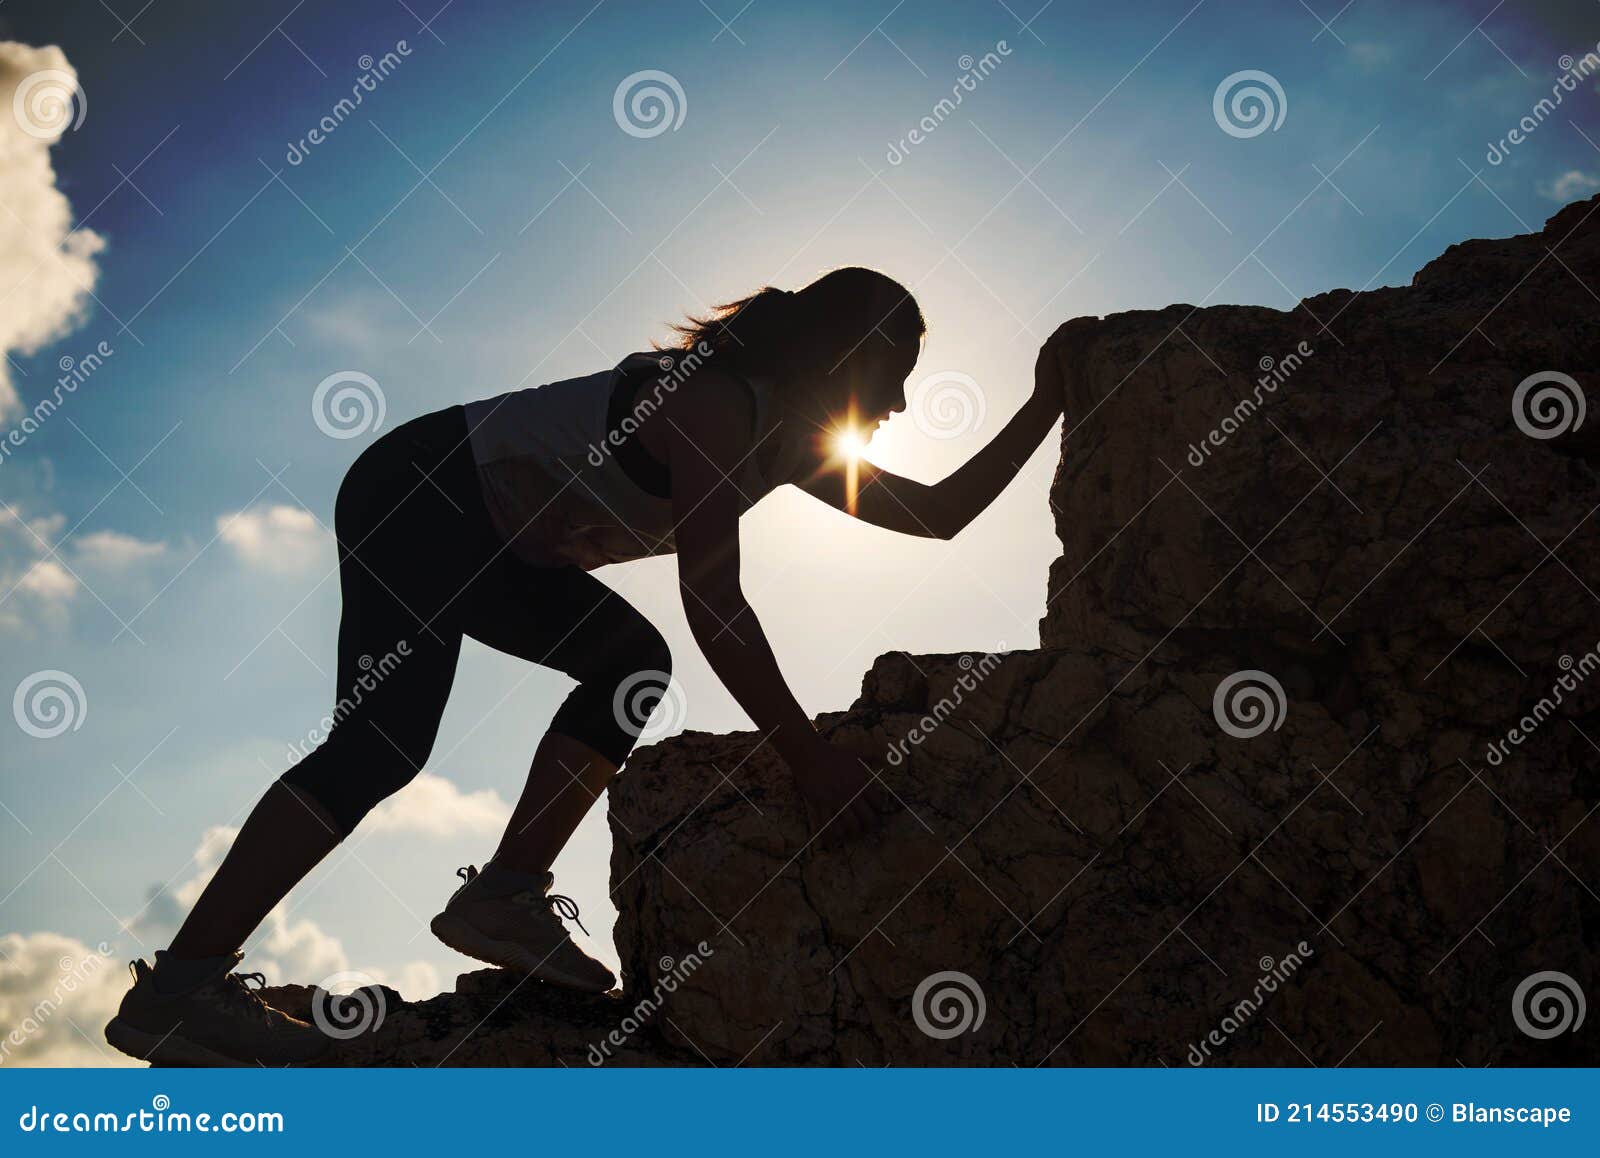 Silueta Senderismo Mujer Subir a La Montaña Pico Foto de archivo - Imagen  de exterior, atleta: 214553490